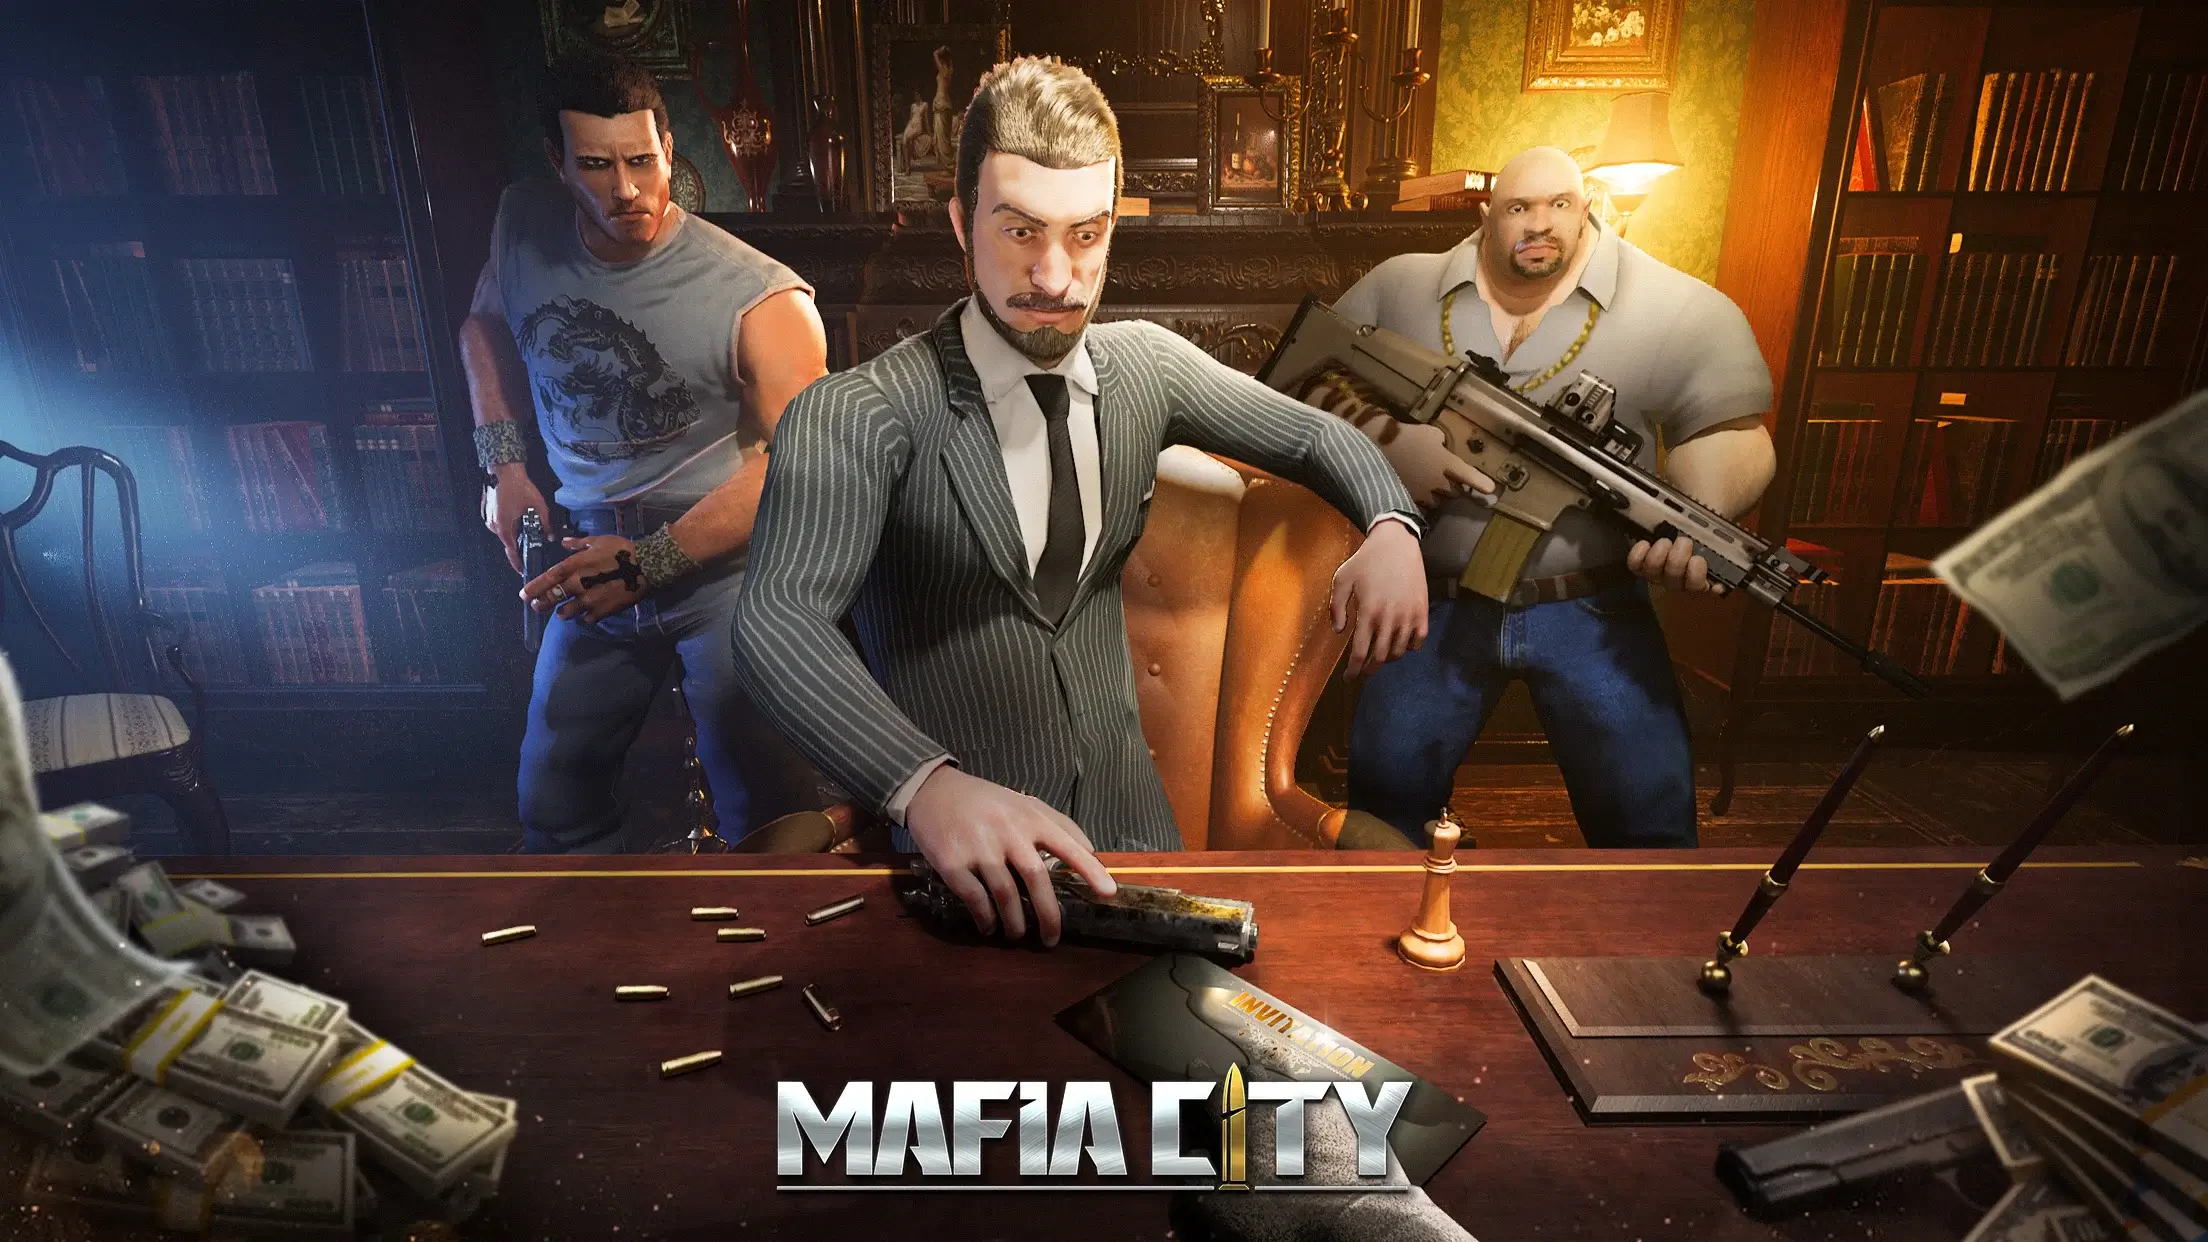 Mafia City for PC